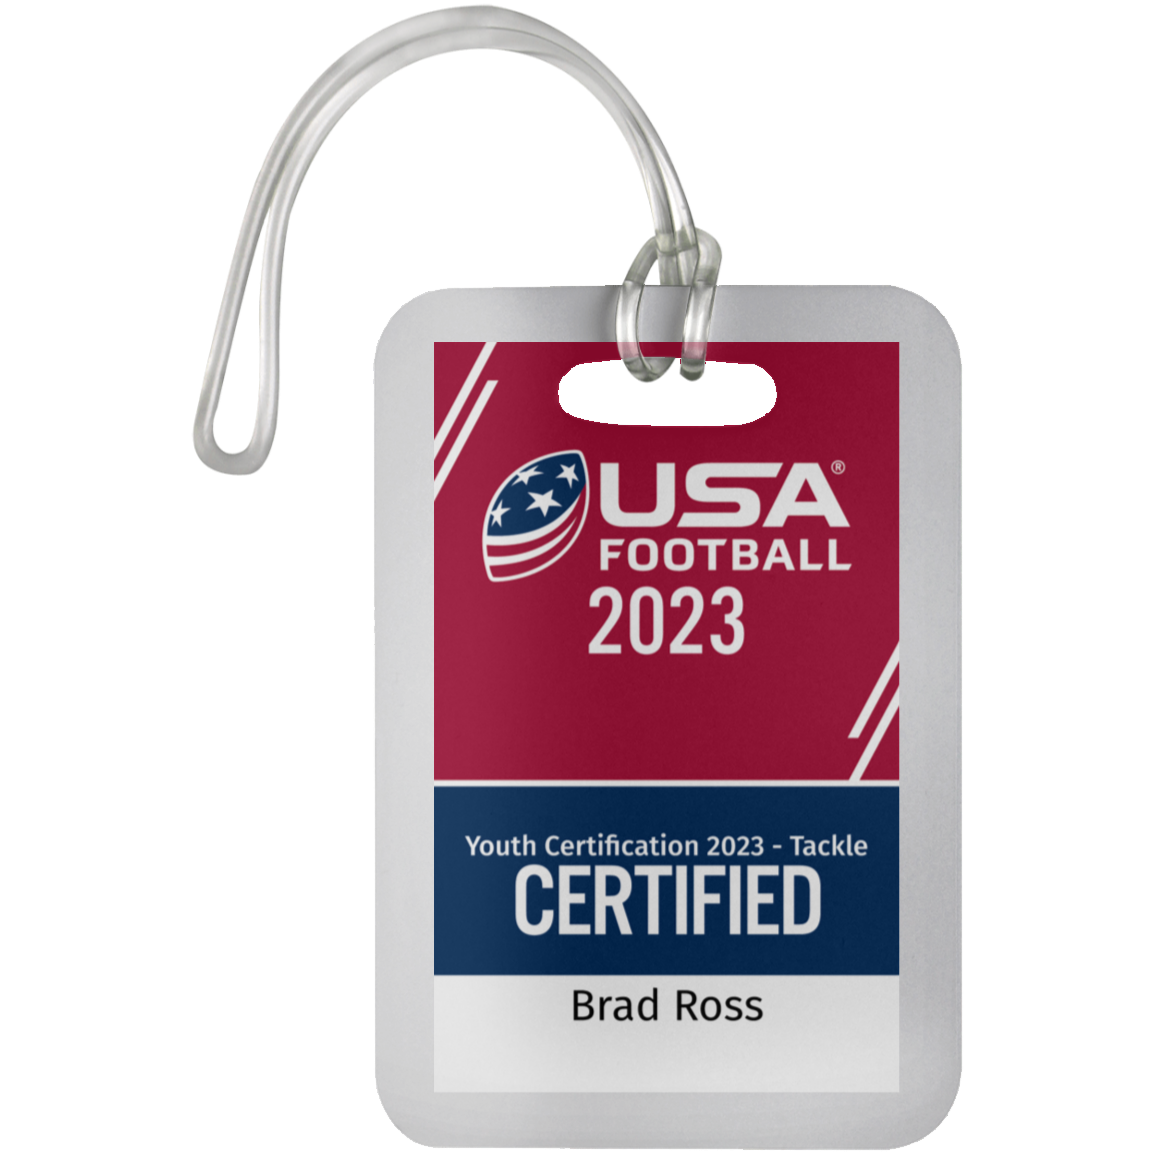 Coach Ross Certification